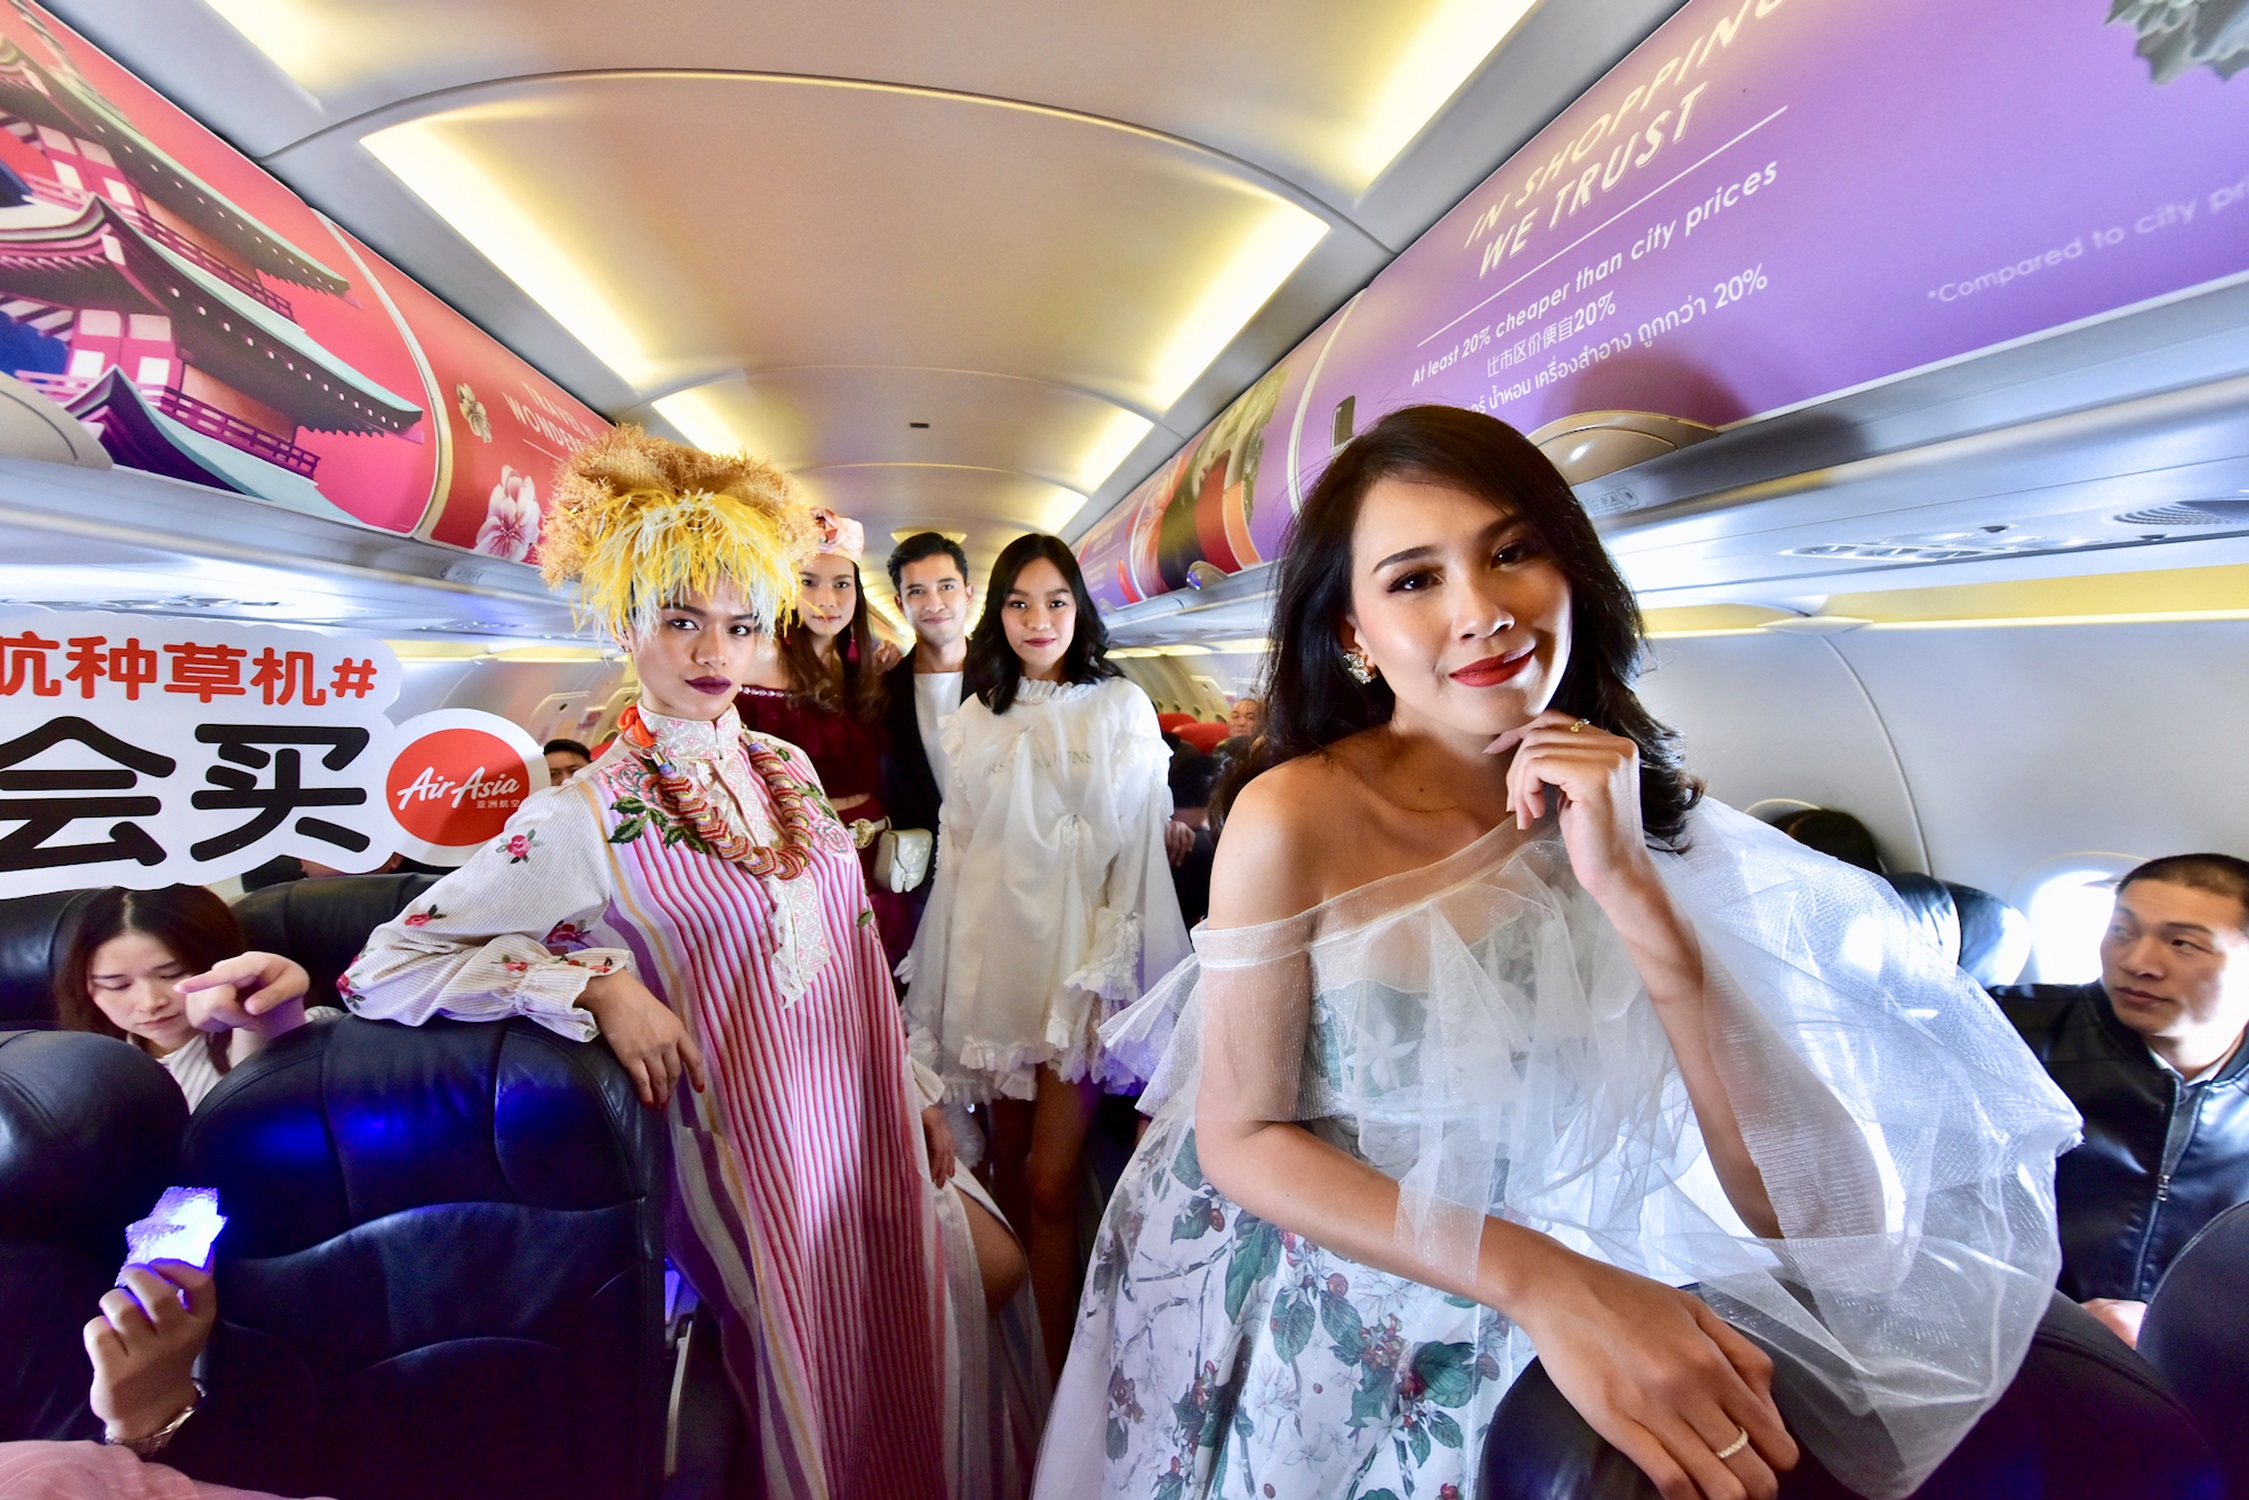 นักท่องเที่ยวจีน ฮือฮา แฟชั่น บนเครื่องบิน จัดโดยสอง ค่ายยักษ์ใหญ่